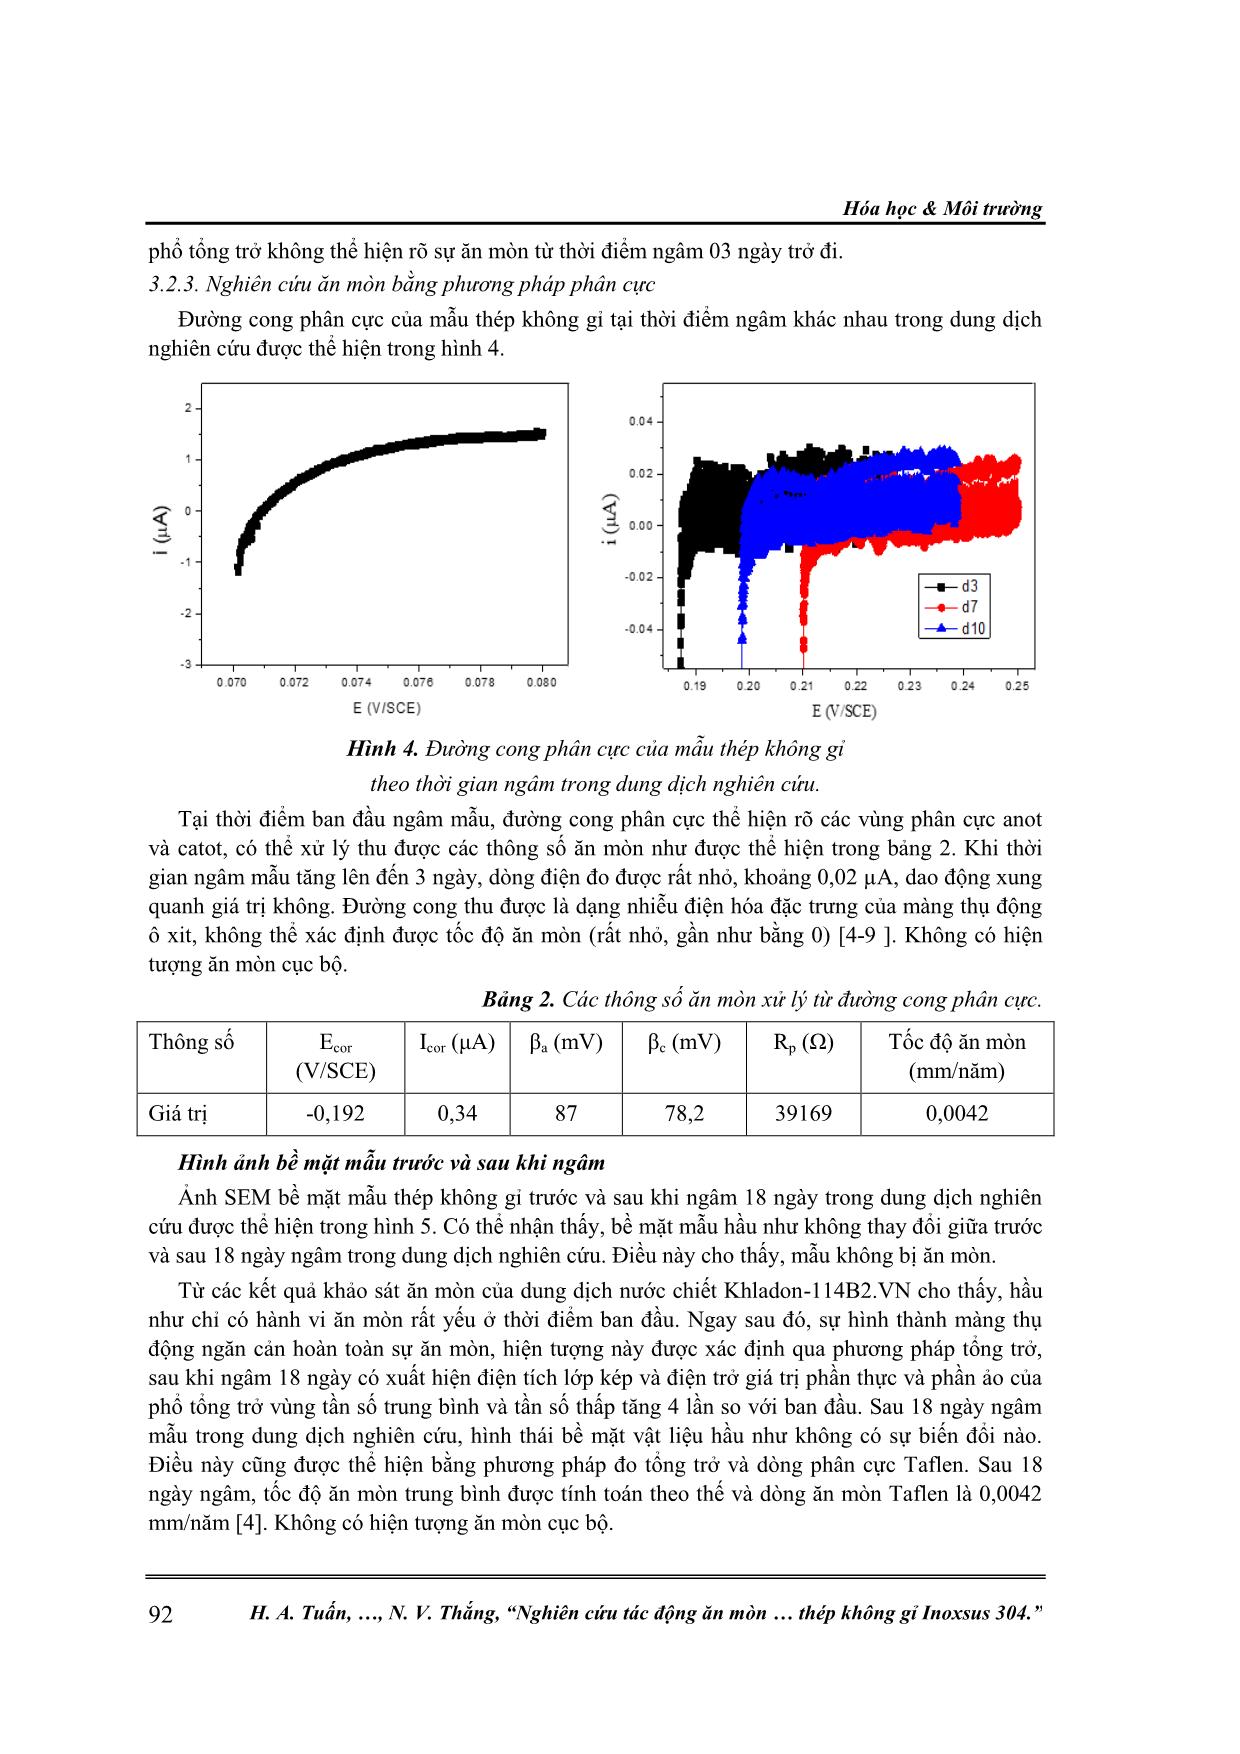 Nghiên cứu tác động ăn mòn của khladon-114b2.vn đến vật liệu thép không gỉ inoxsus 304 trang 4